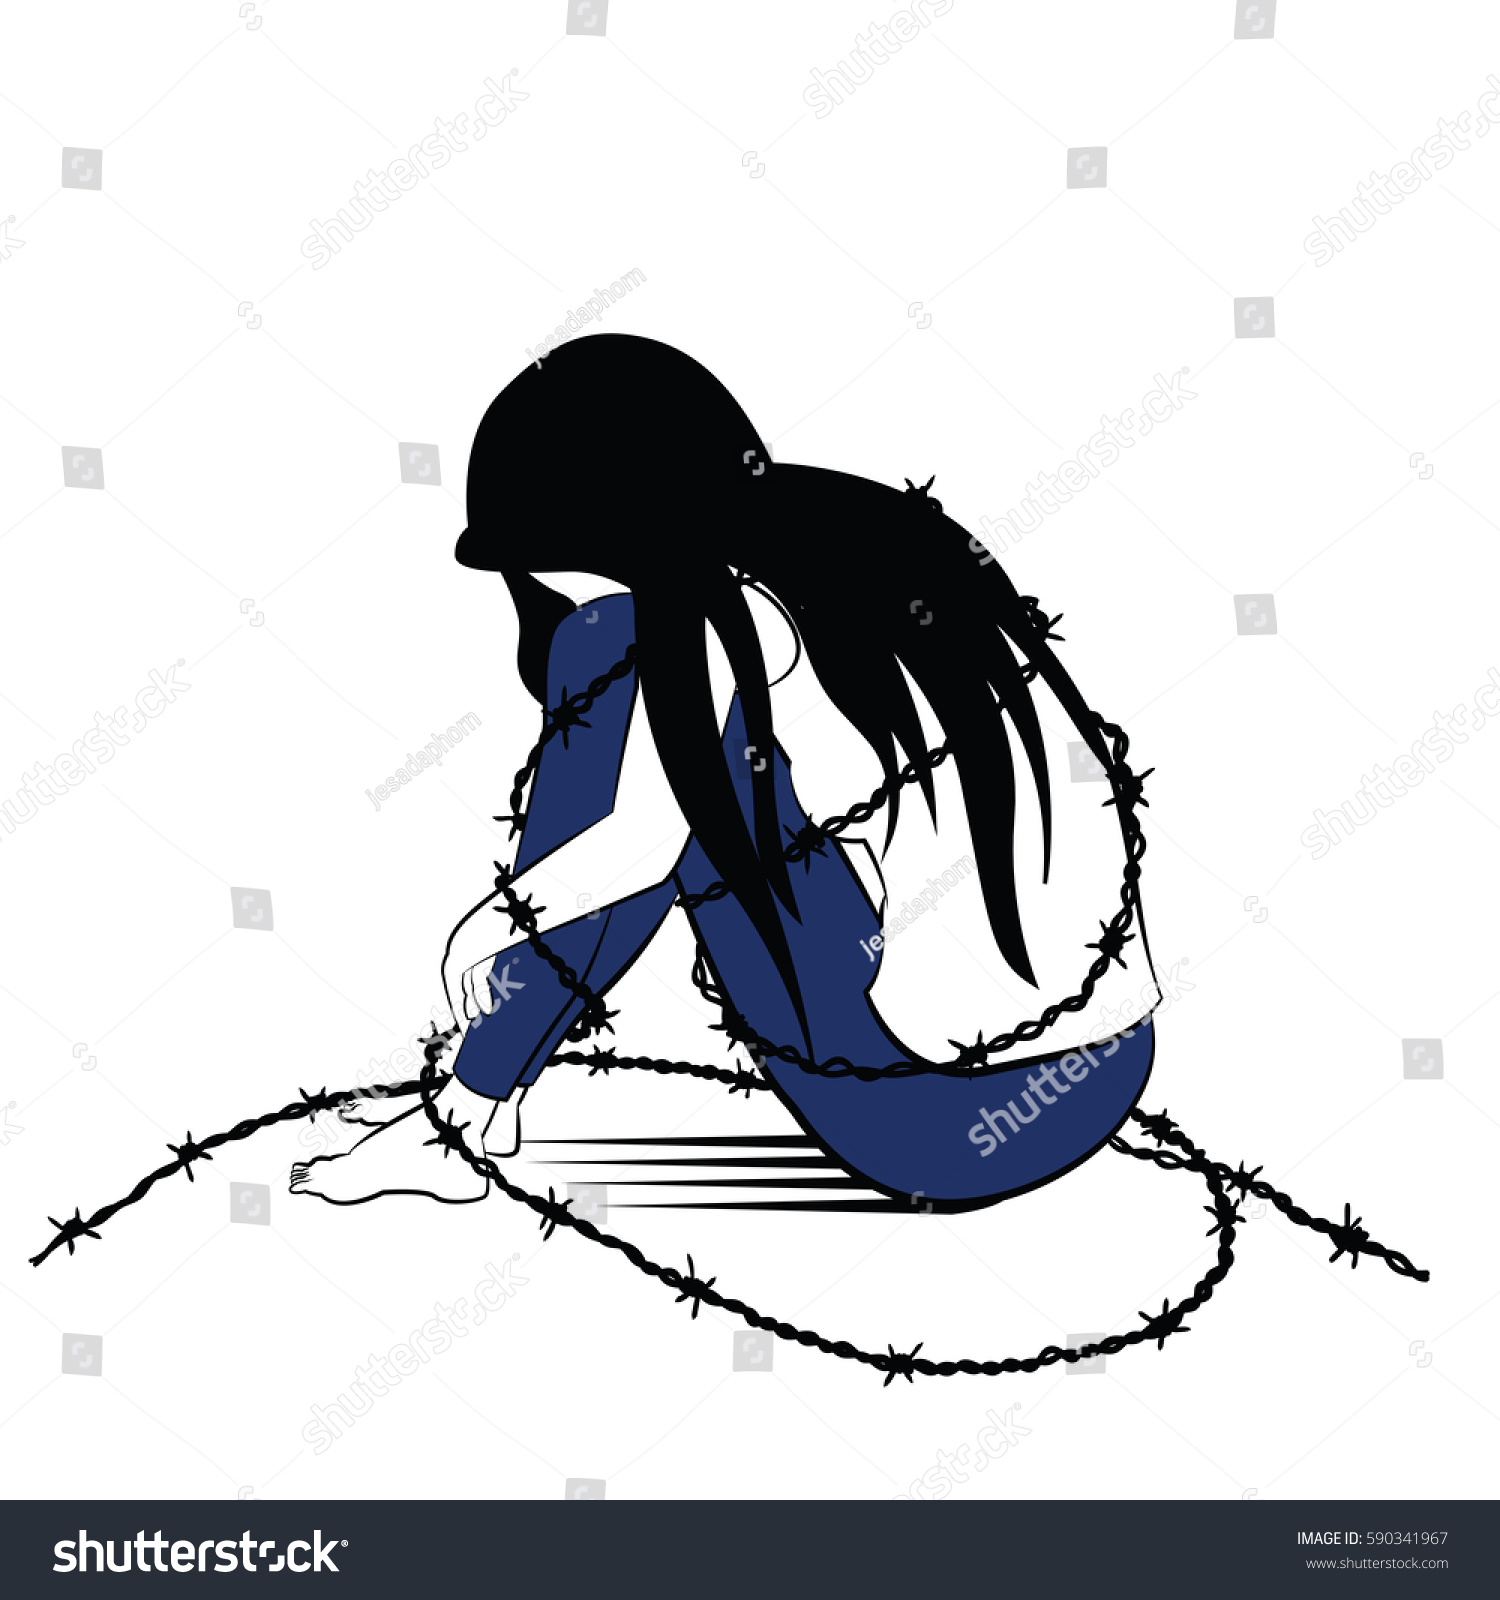 インク写生風のベクターイラスト 孤独な女性 悲しみとうつ病 一人で丸く締め付けられたワイヤーで囲まれた状態で座り 女性が投獄されたり 檻に入れられたりする姿を描いたもの のベクター画像素材 ロイヤリティフリー